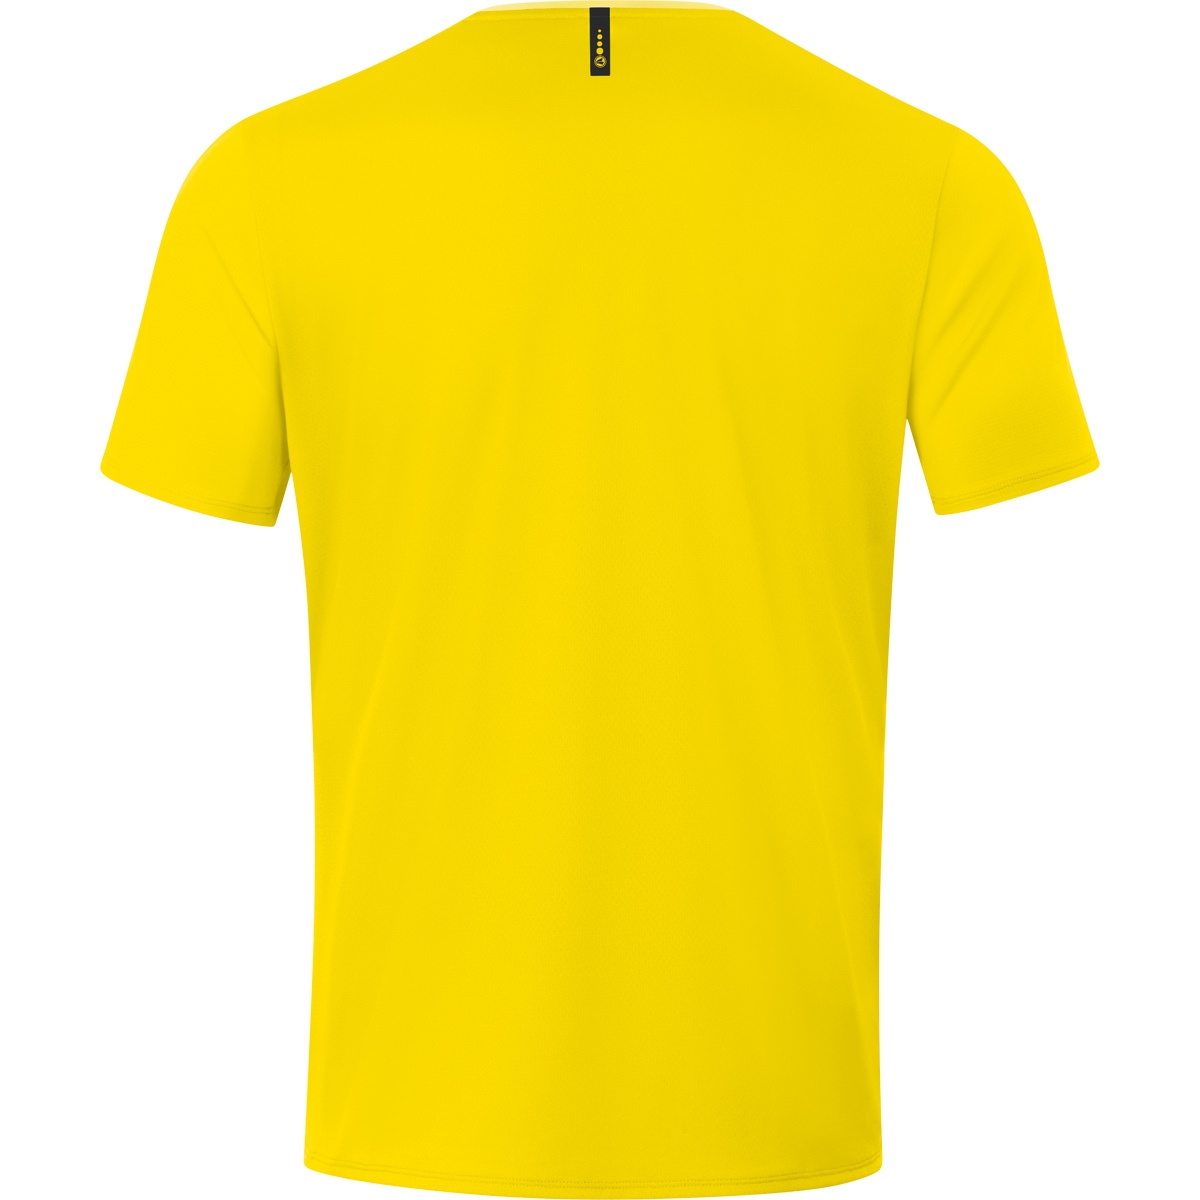 JAKO T-Shirt Champ 2.0 citro/citro 3XL, 6120 Gr. light, Herren